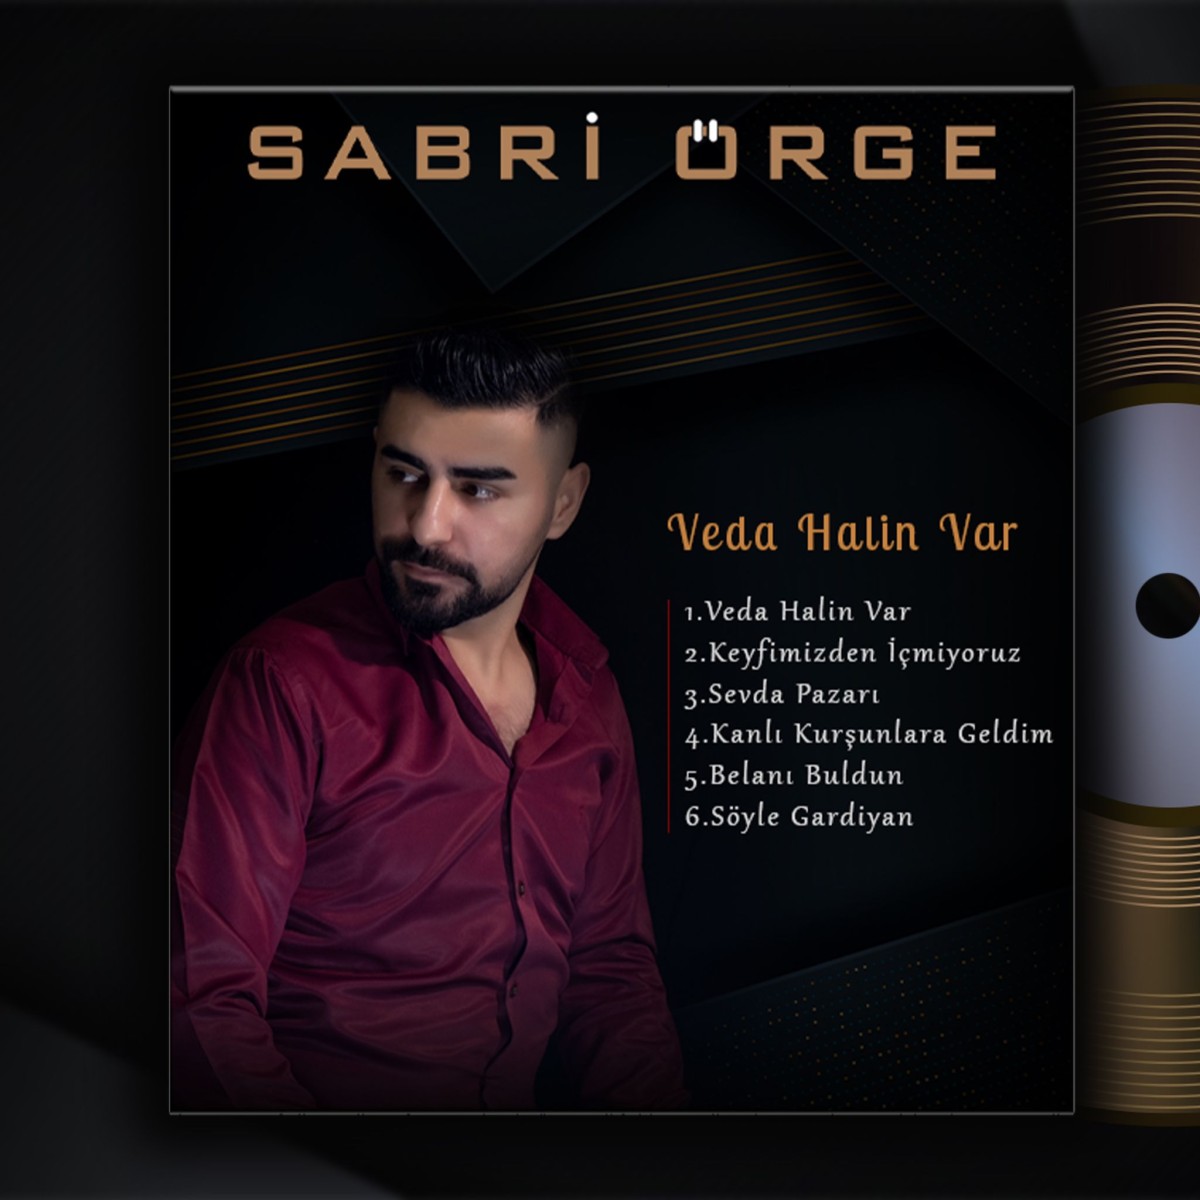 Sanatçı Sabri Örge’nin Yeni Albümü “Veda Halin Var” Çıktı